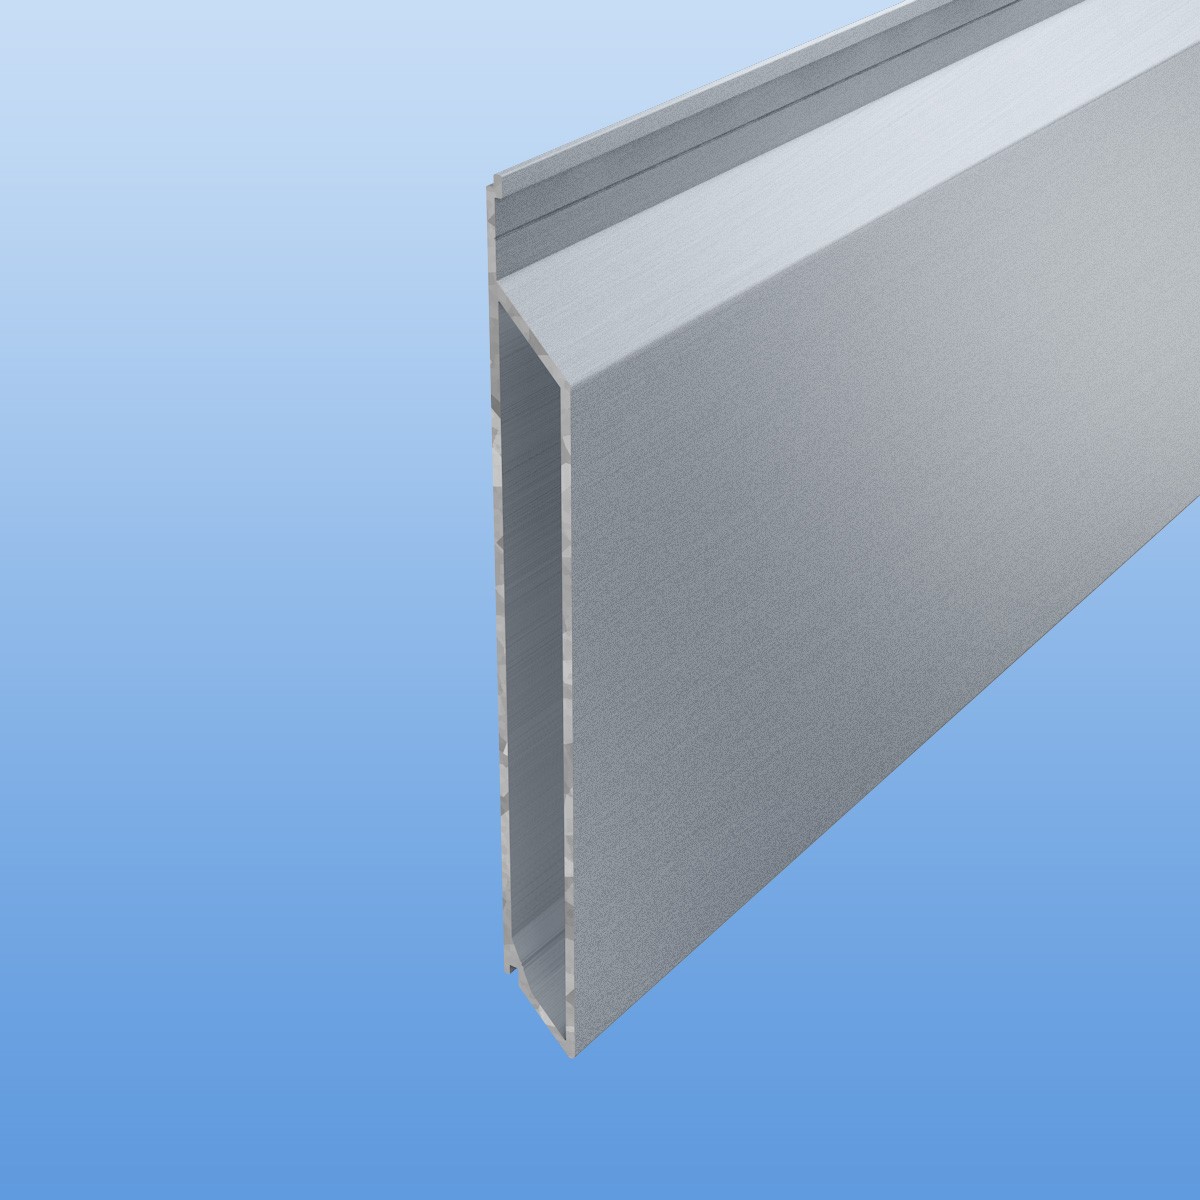 Rhombusprofil aus Aluminium 16mm mit Montagesteg in blank / unbeschichtet - Sichtfläche 134mm